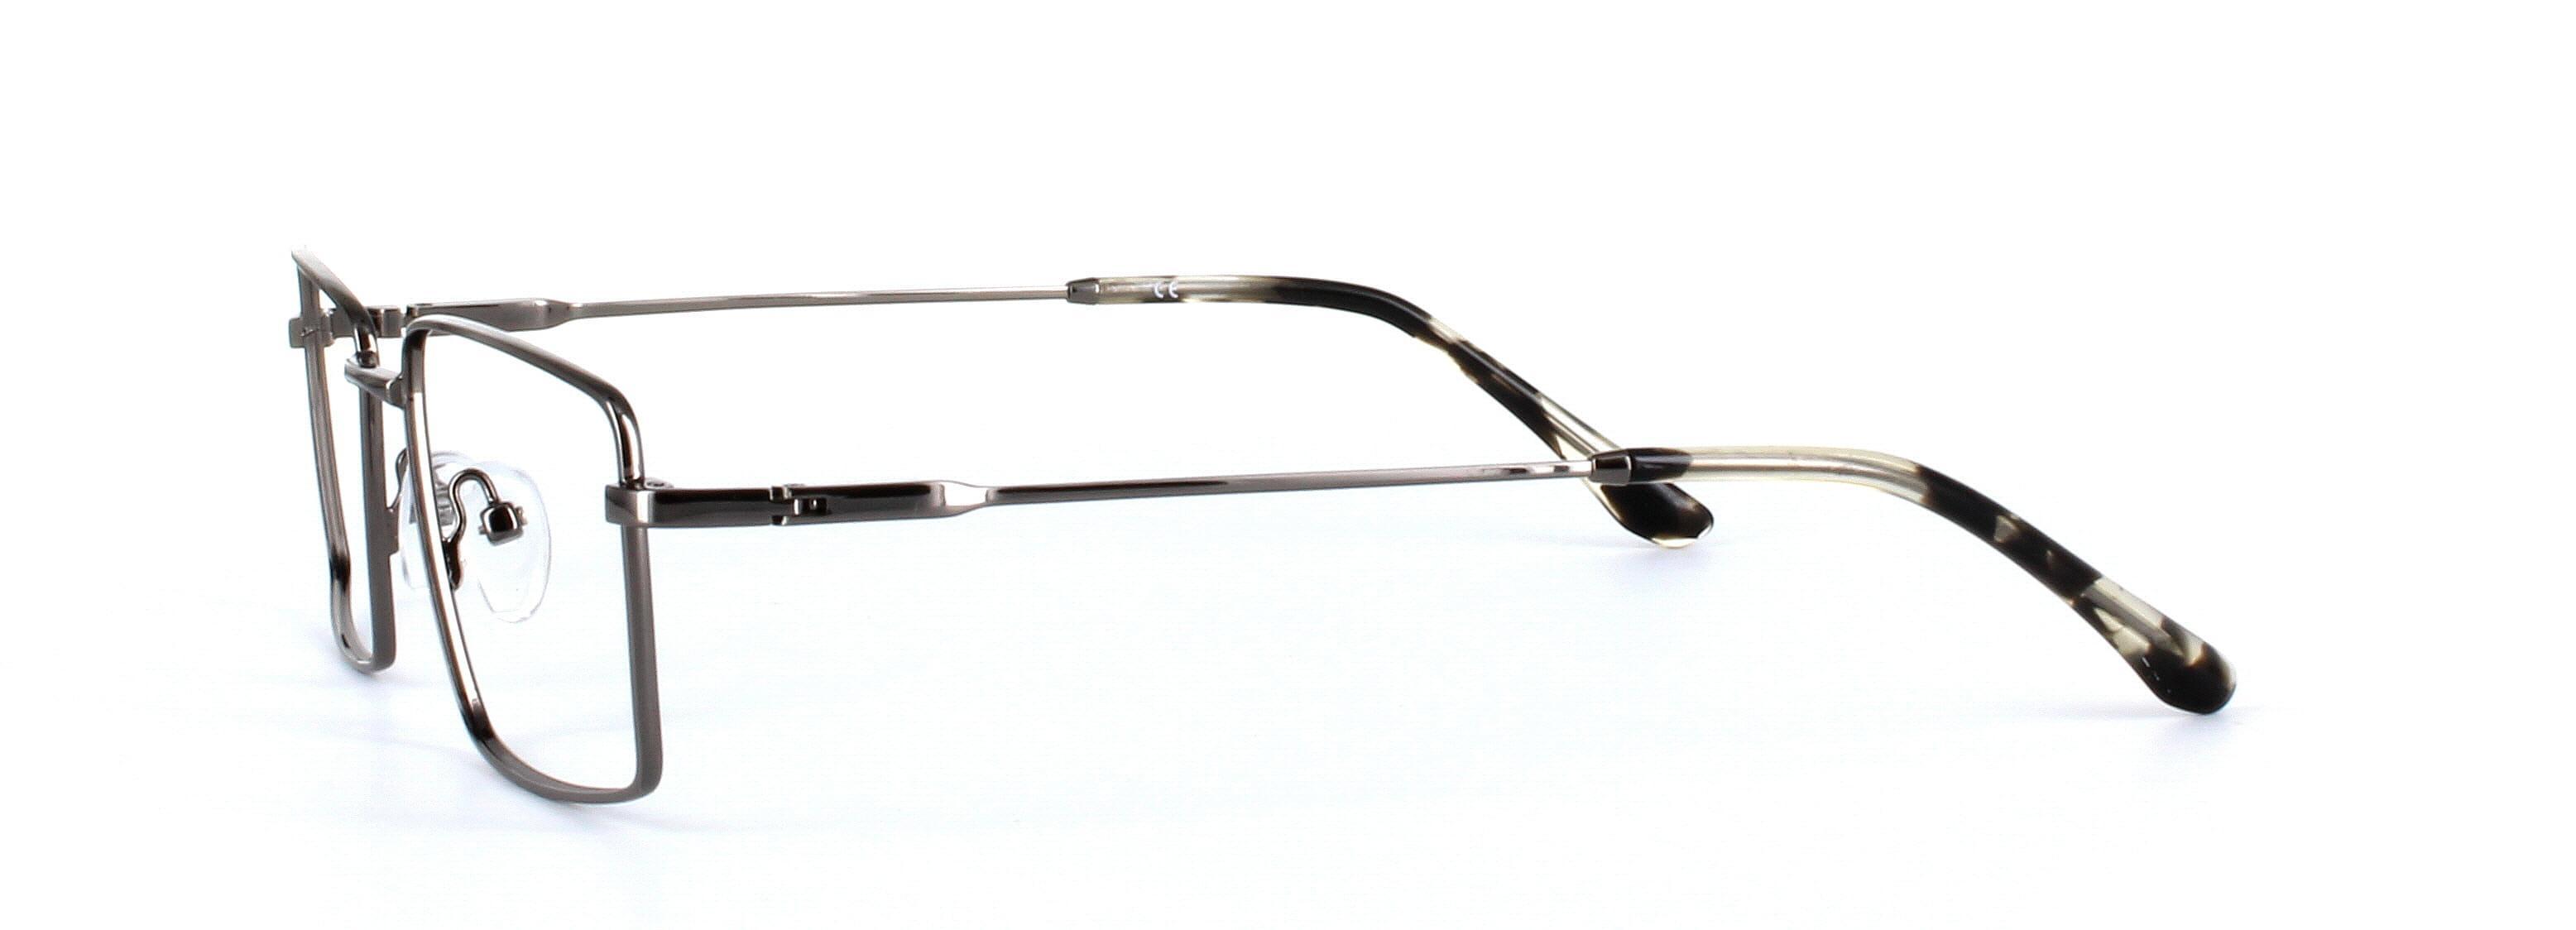 Catan Gunmetal Full Rim Rectangular Metal Glasses - Image View 2